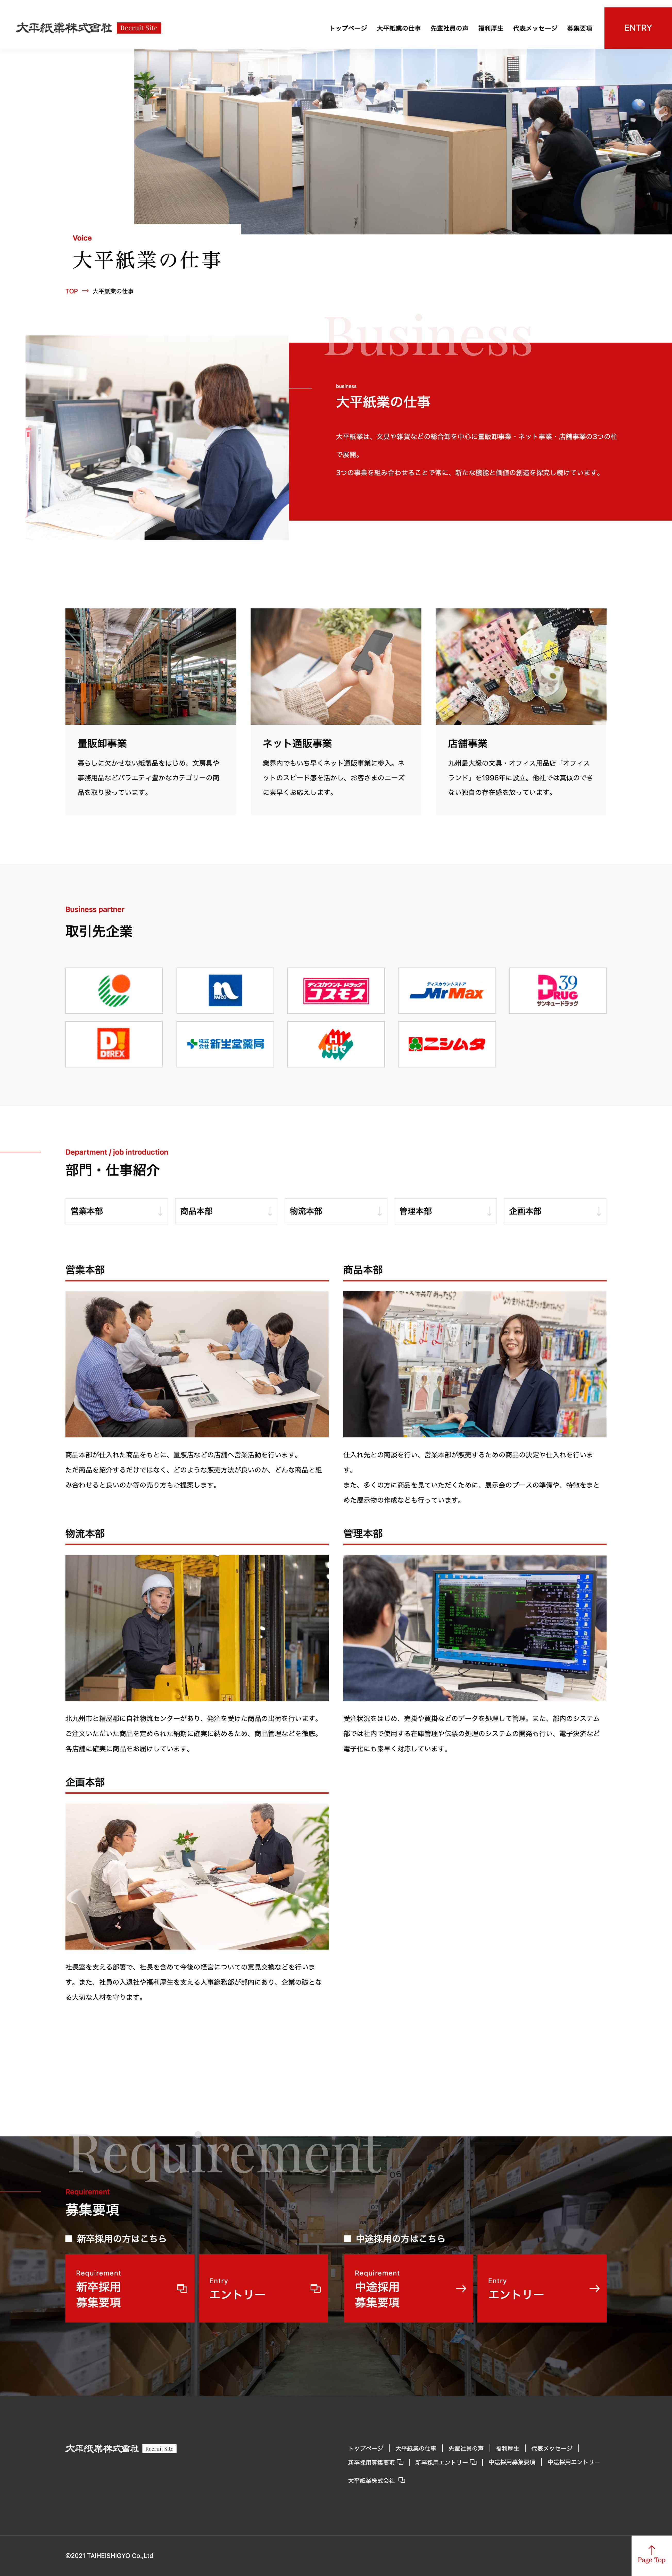 大平紙業株式会社様 採用サイト PC画像